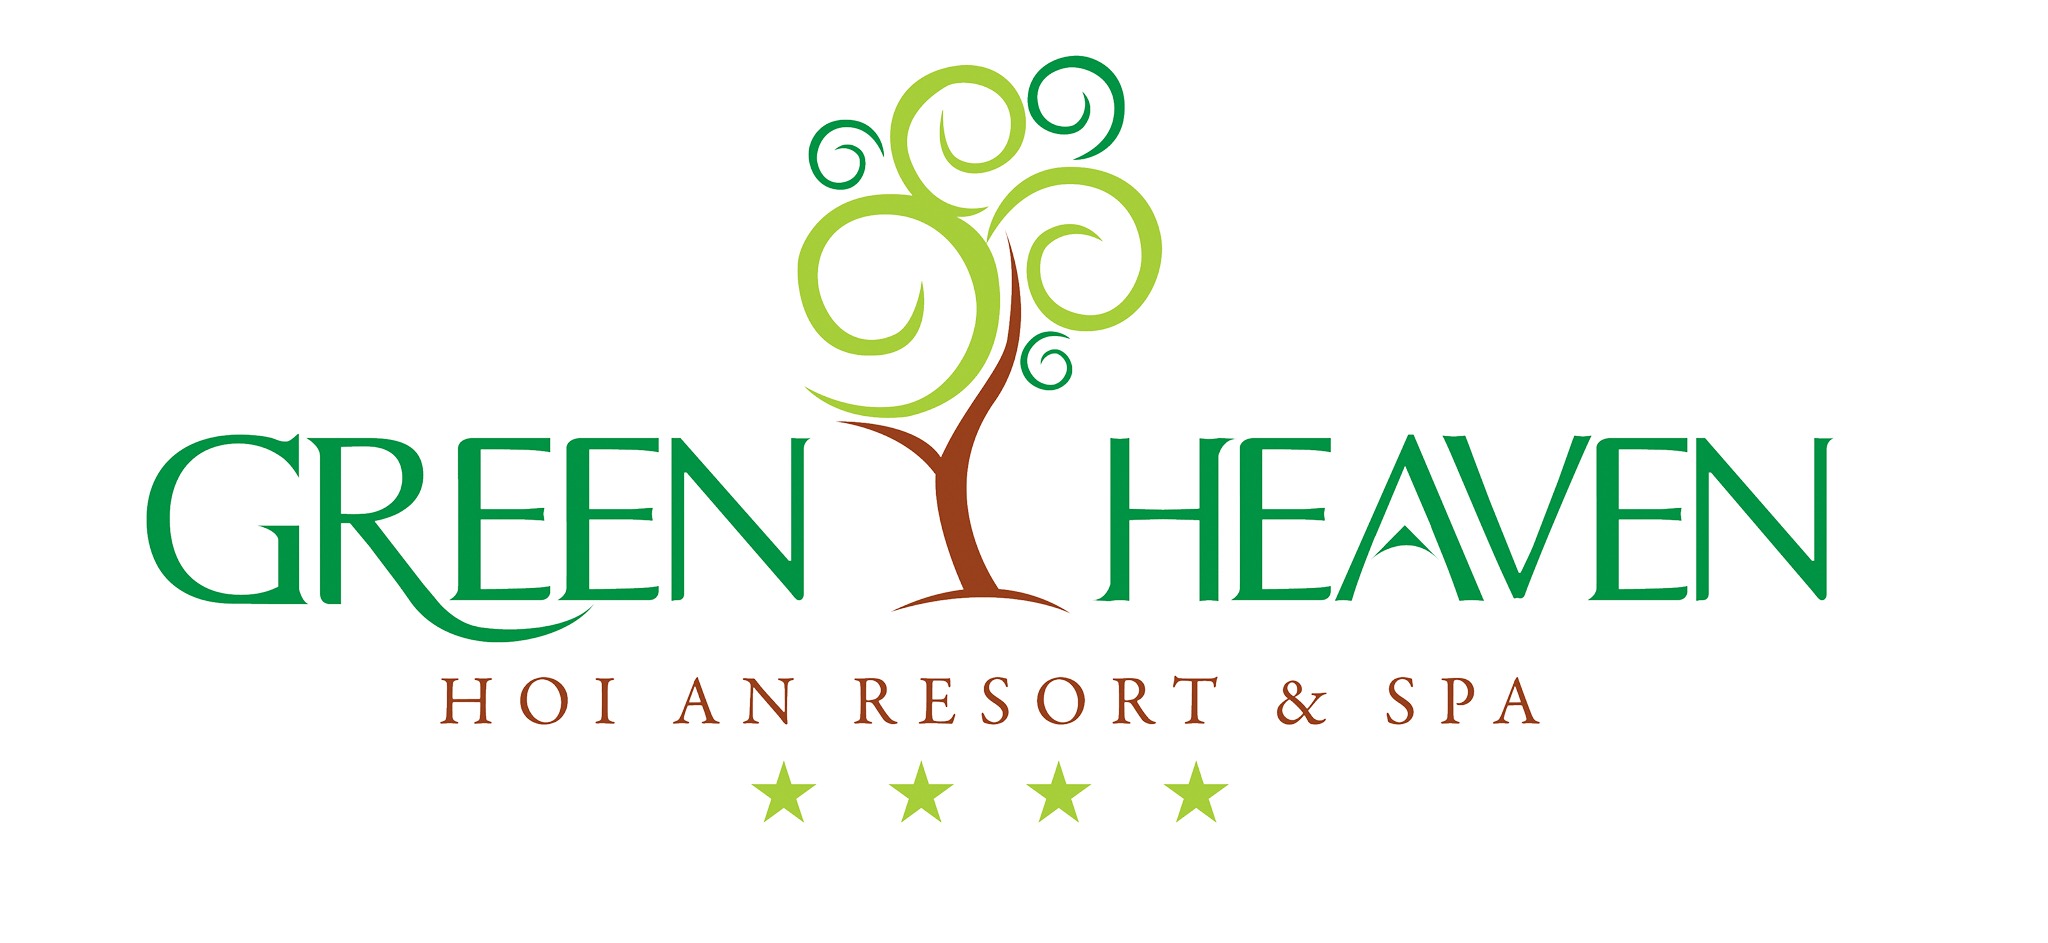 Thiên đường xanh - Green Heaven Resort & Spa